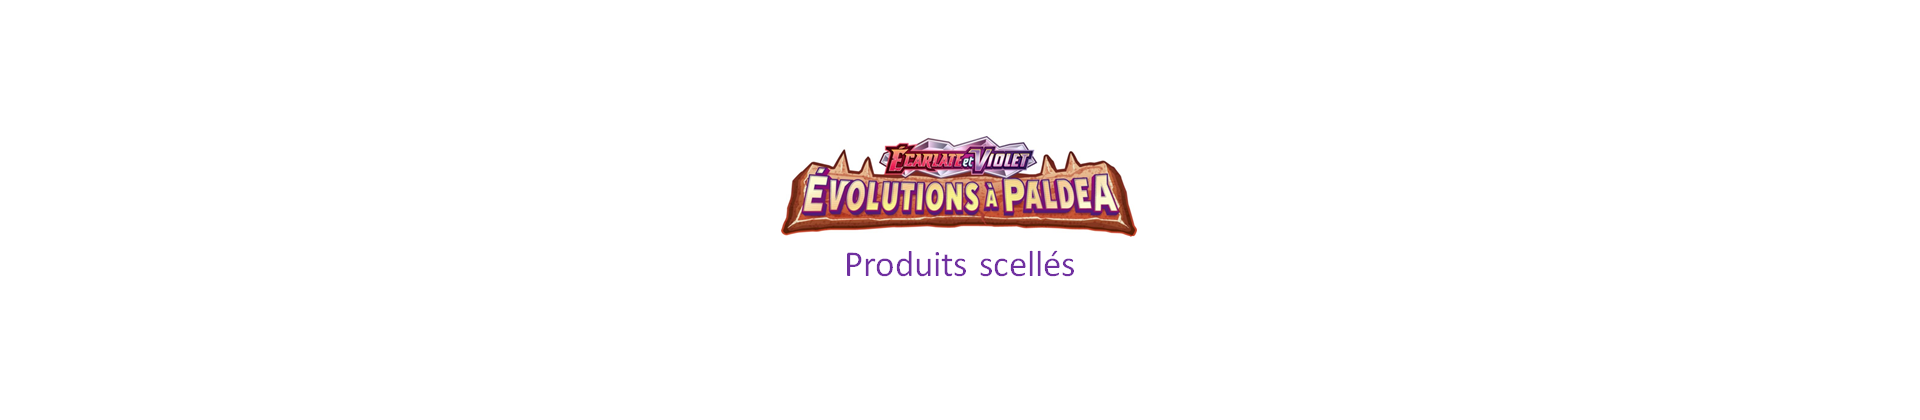 EV02 Evolutions à Paldéa - Produits scellés